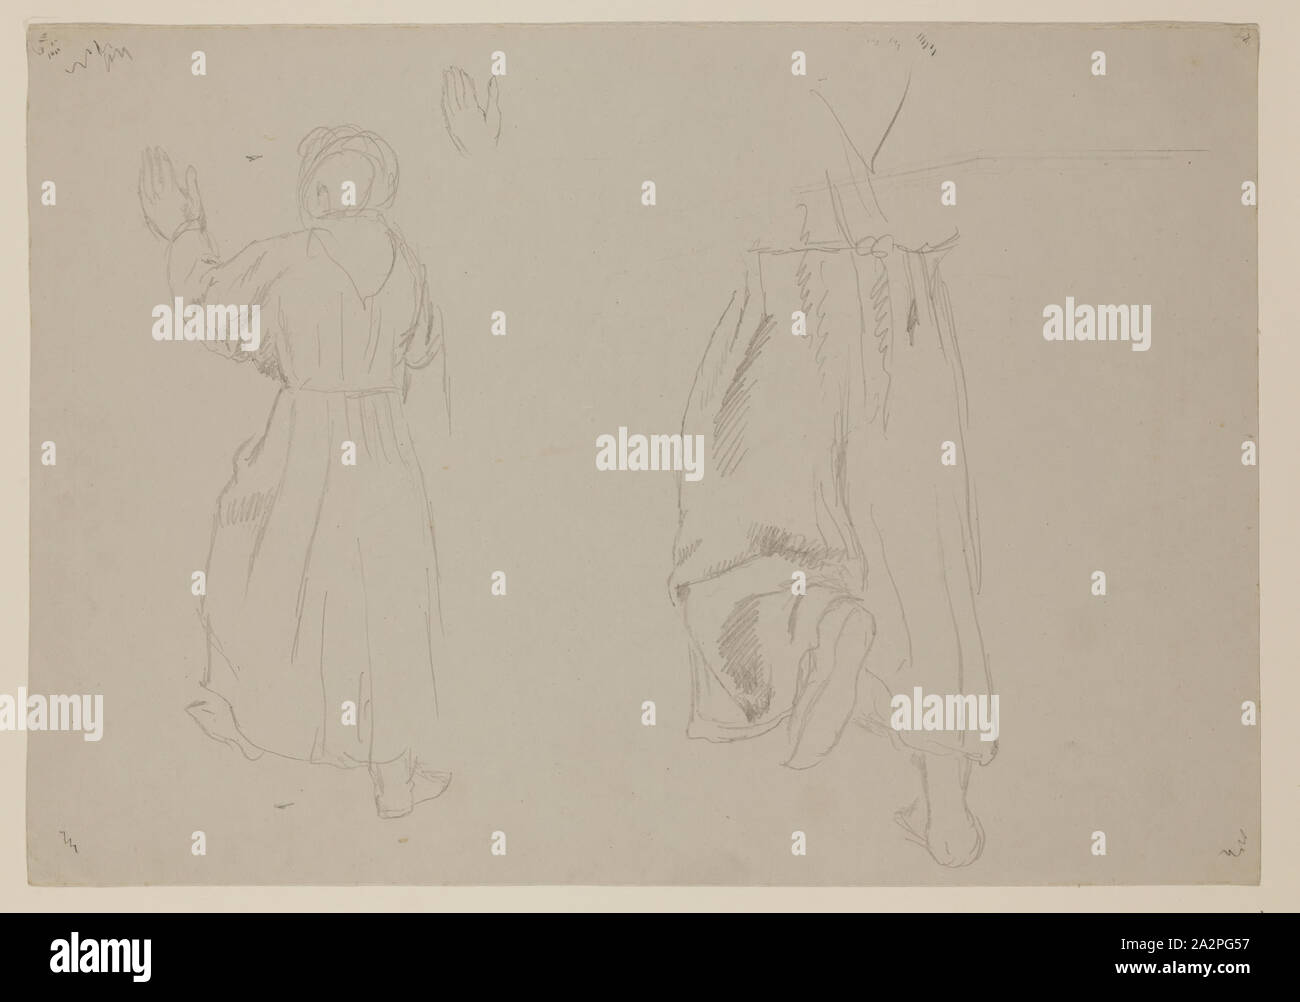 Thomas Cole, Américain, 1801-1848, un moine, entre 1801 et 1848, d'un crayon à mine de graphite sur papier vélin gris clair, feuille : 9 3/4 pouces (24,8 × 14 × 35,6 cm Banque D'Images